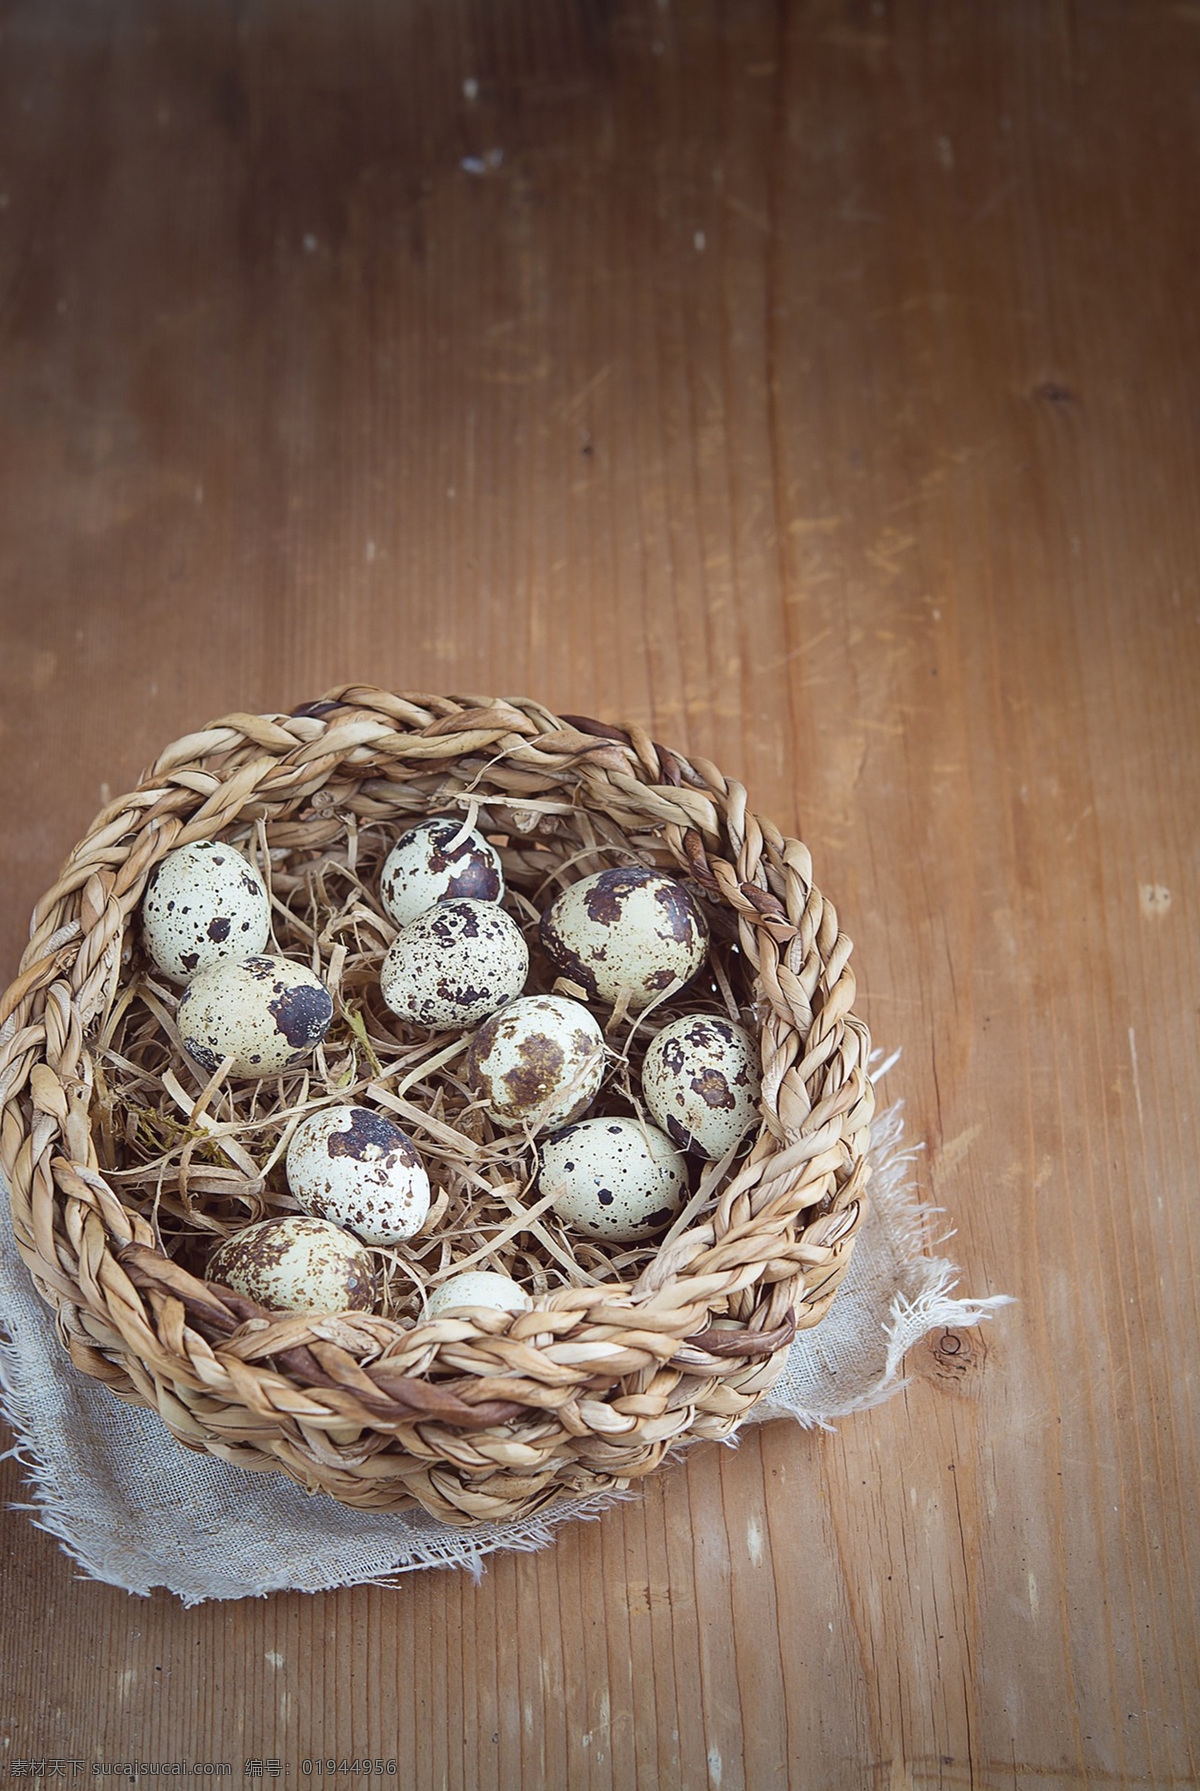 鹌鹑蛋 蛋 鹑鸟蛋 鹌鹑卵 quail egg 鹌鹑